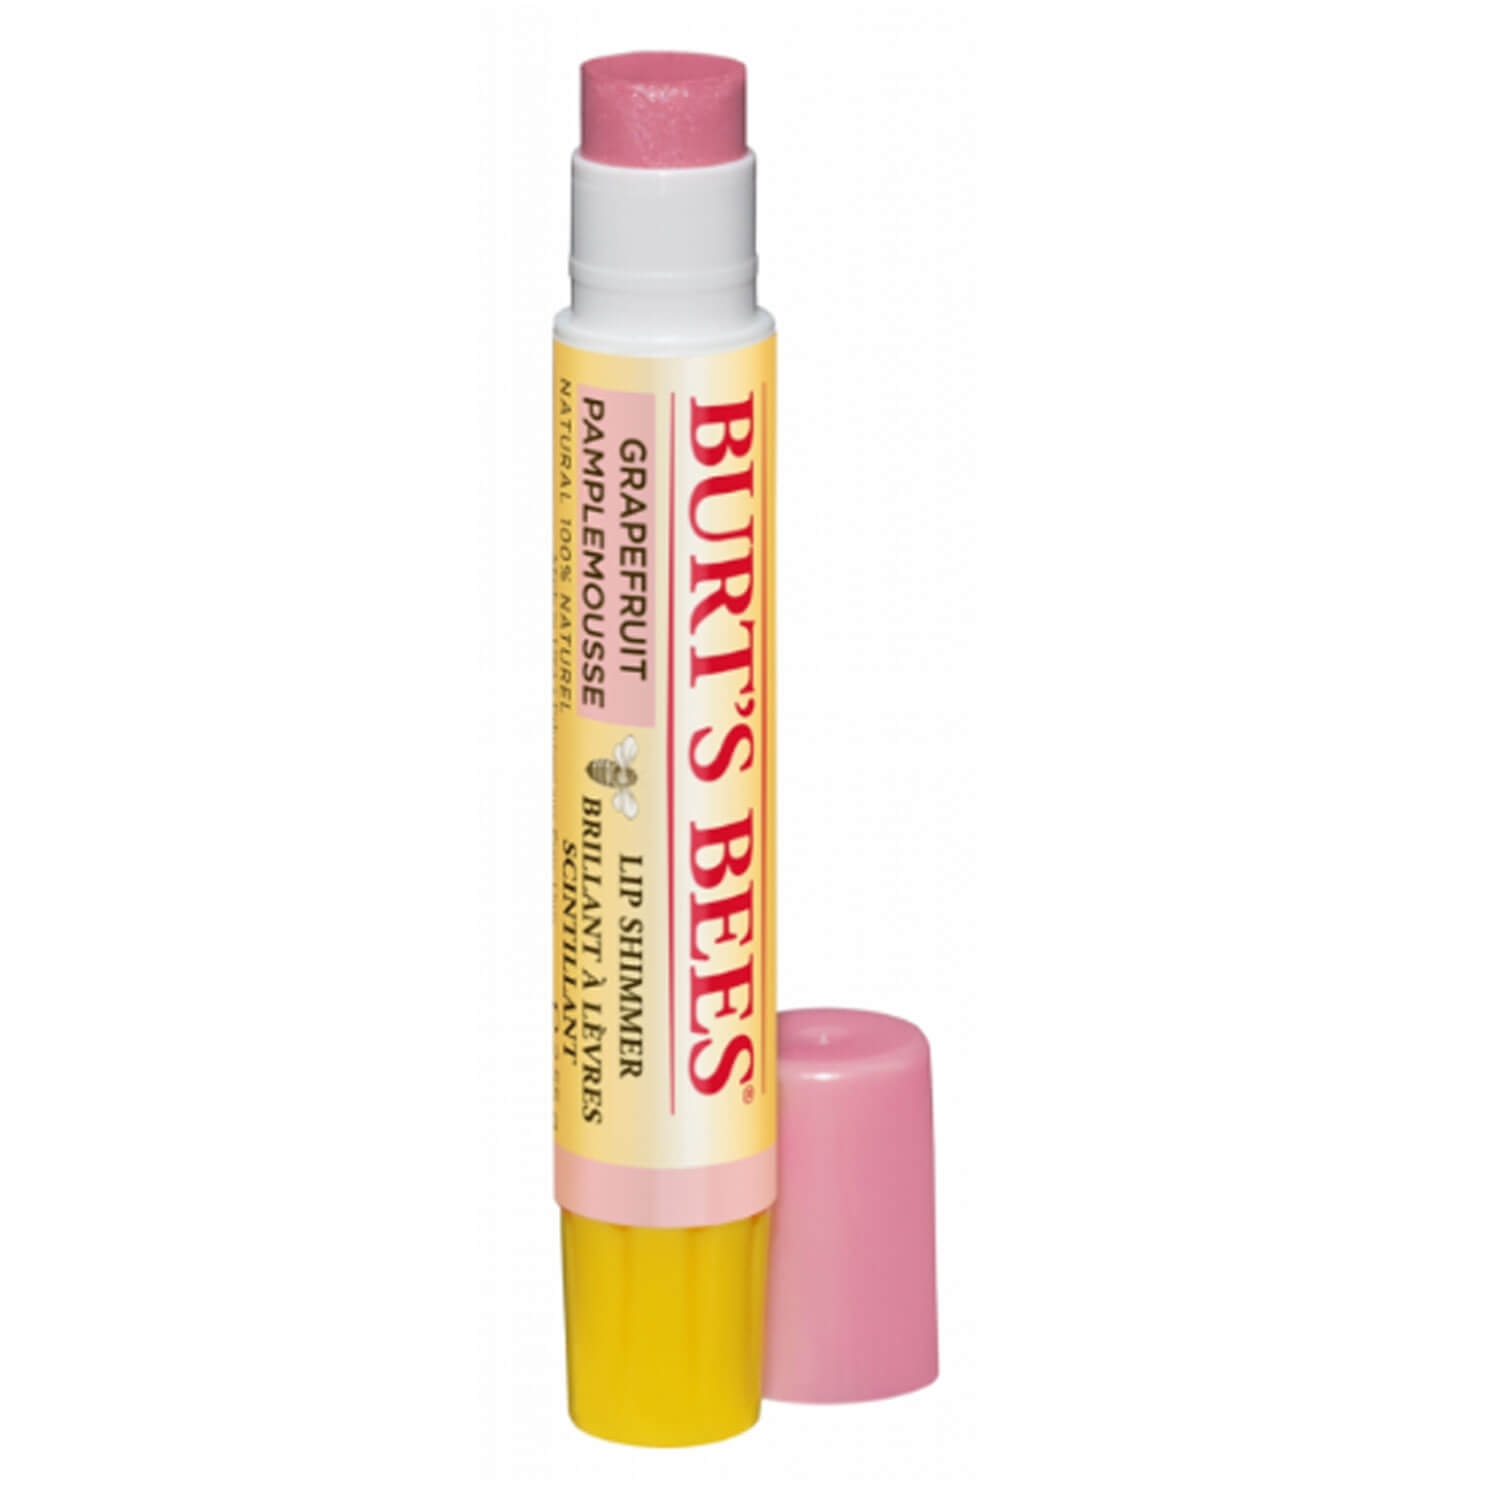 Produktbild von Burt's Bees - Lip Shimmer Grapefruit